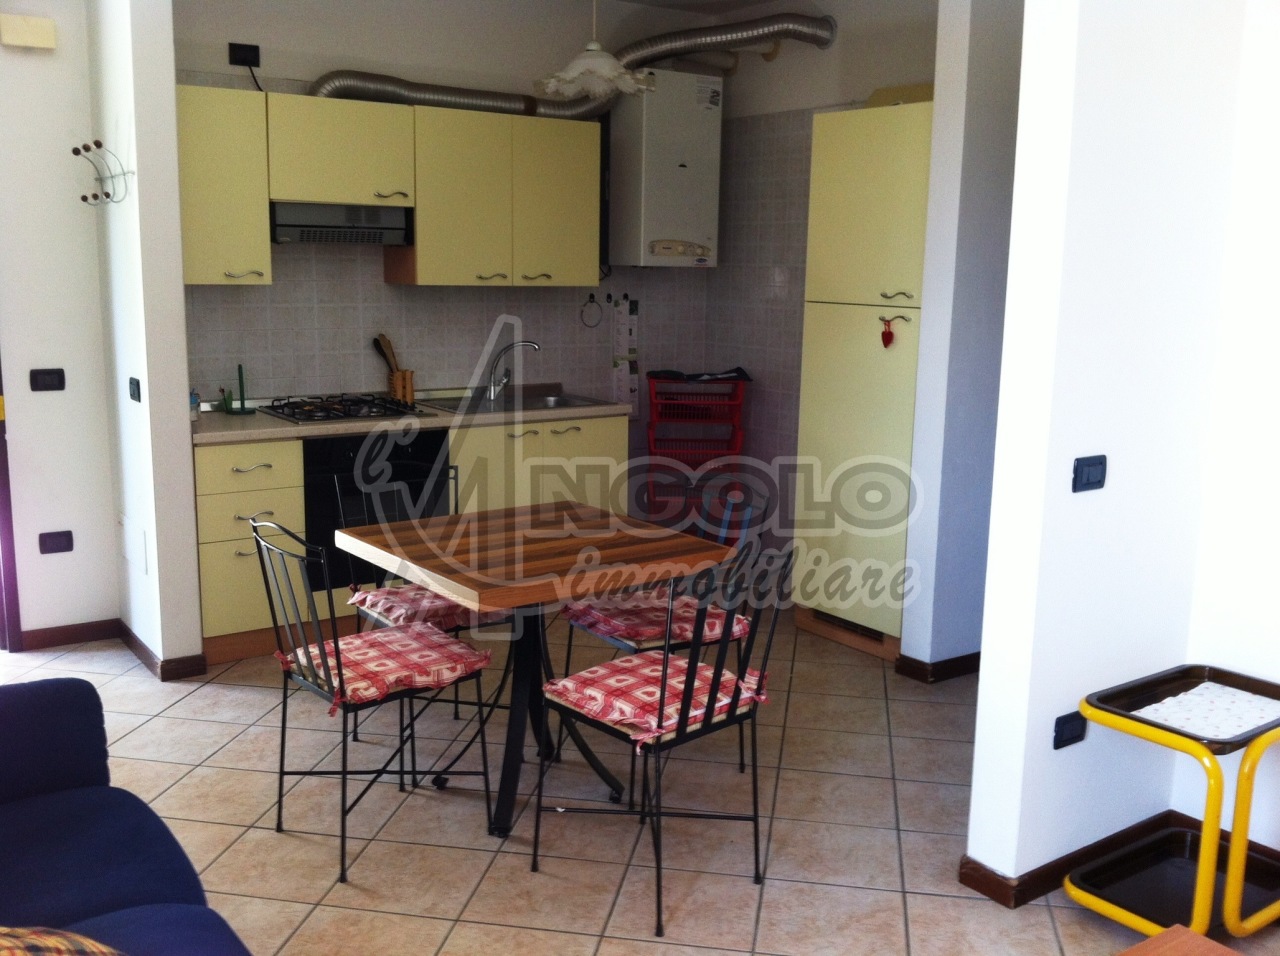 Appartamento in vendita a Stienta, 5 locali, prezzo € 79.000 | CambioCasa.it